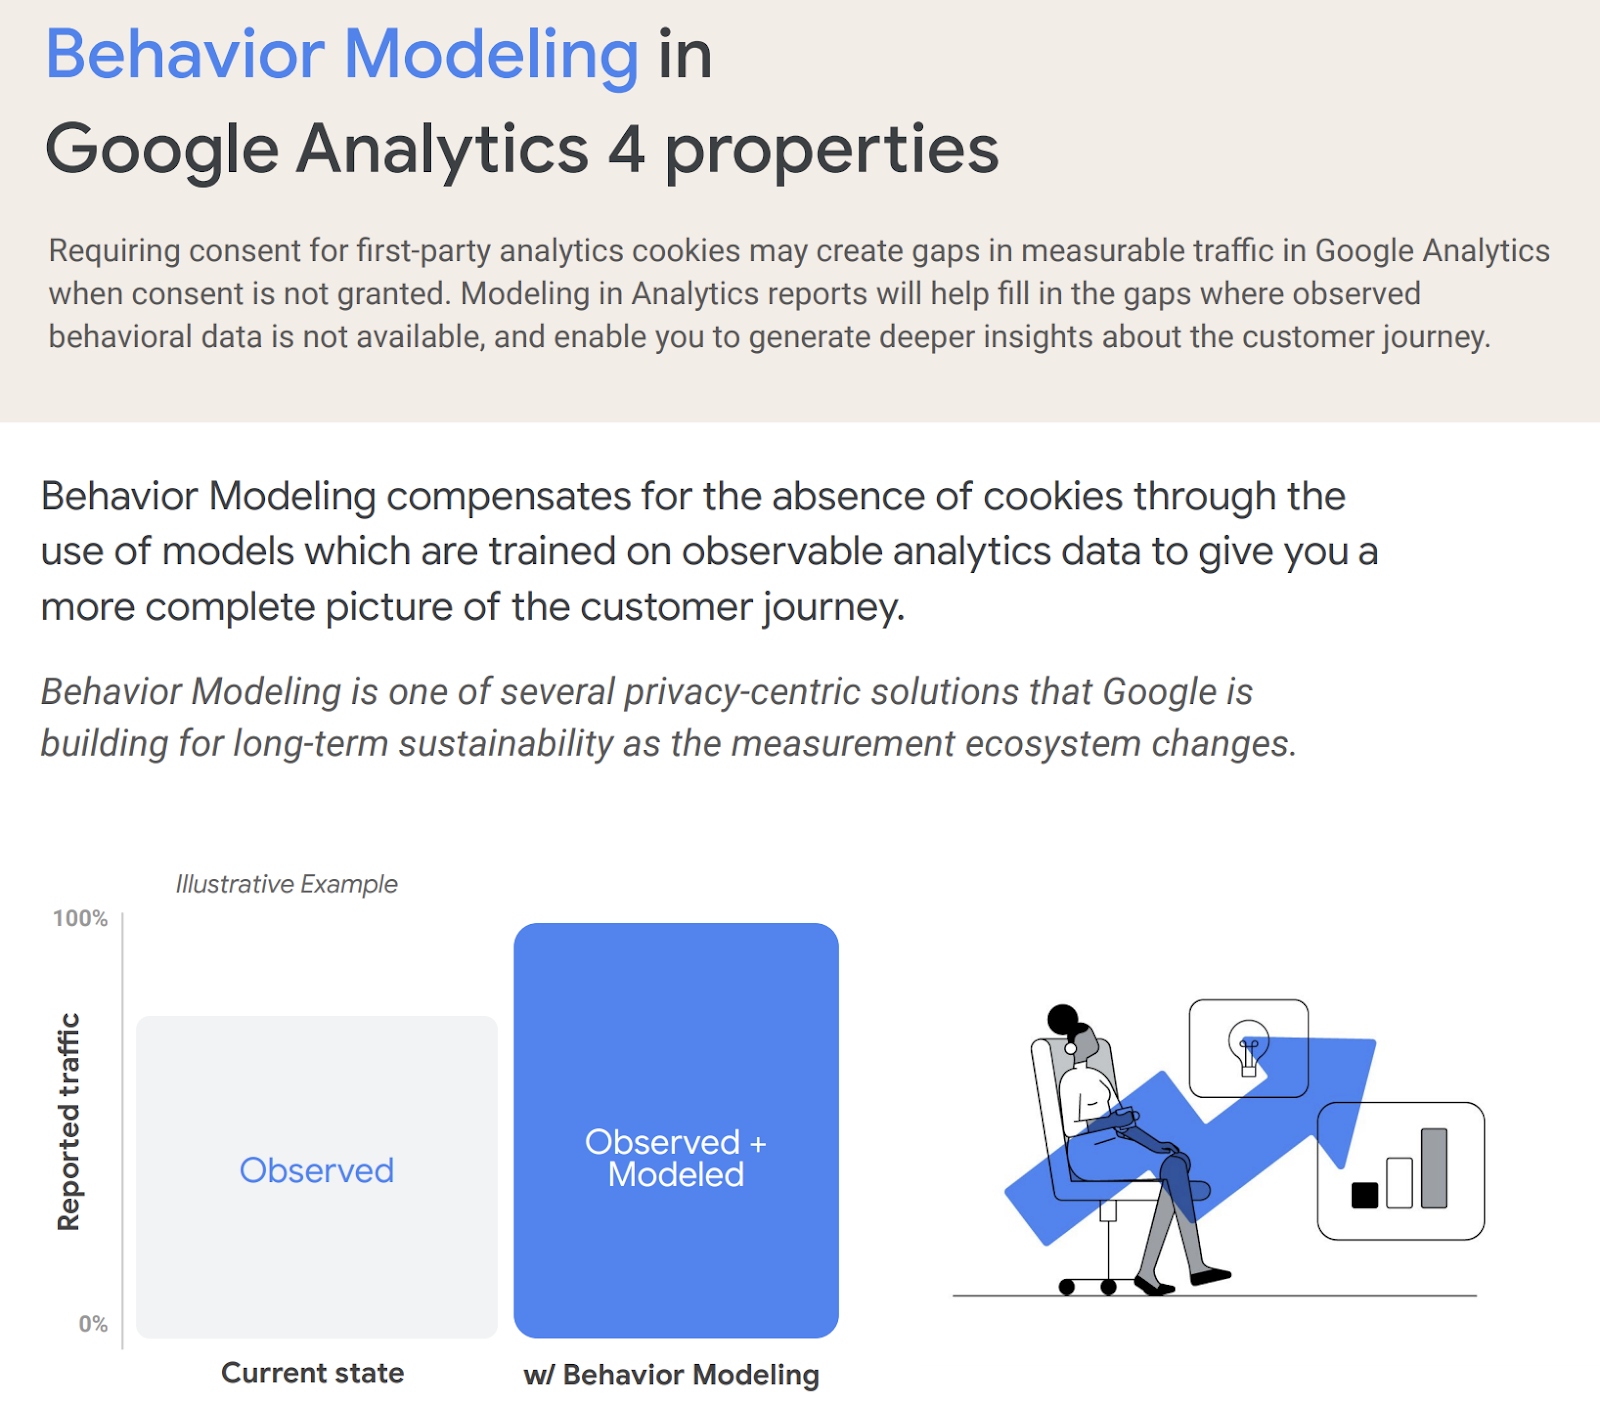 Text: Behavior Modeling in Google Analytics 4 properties

